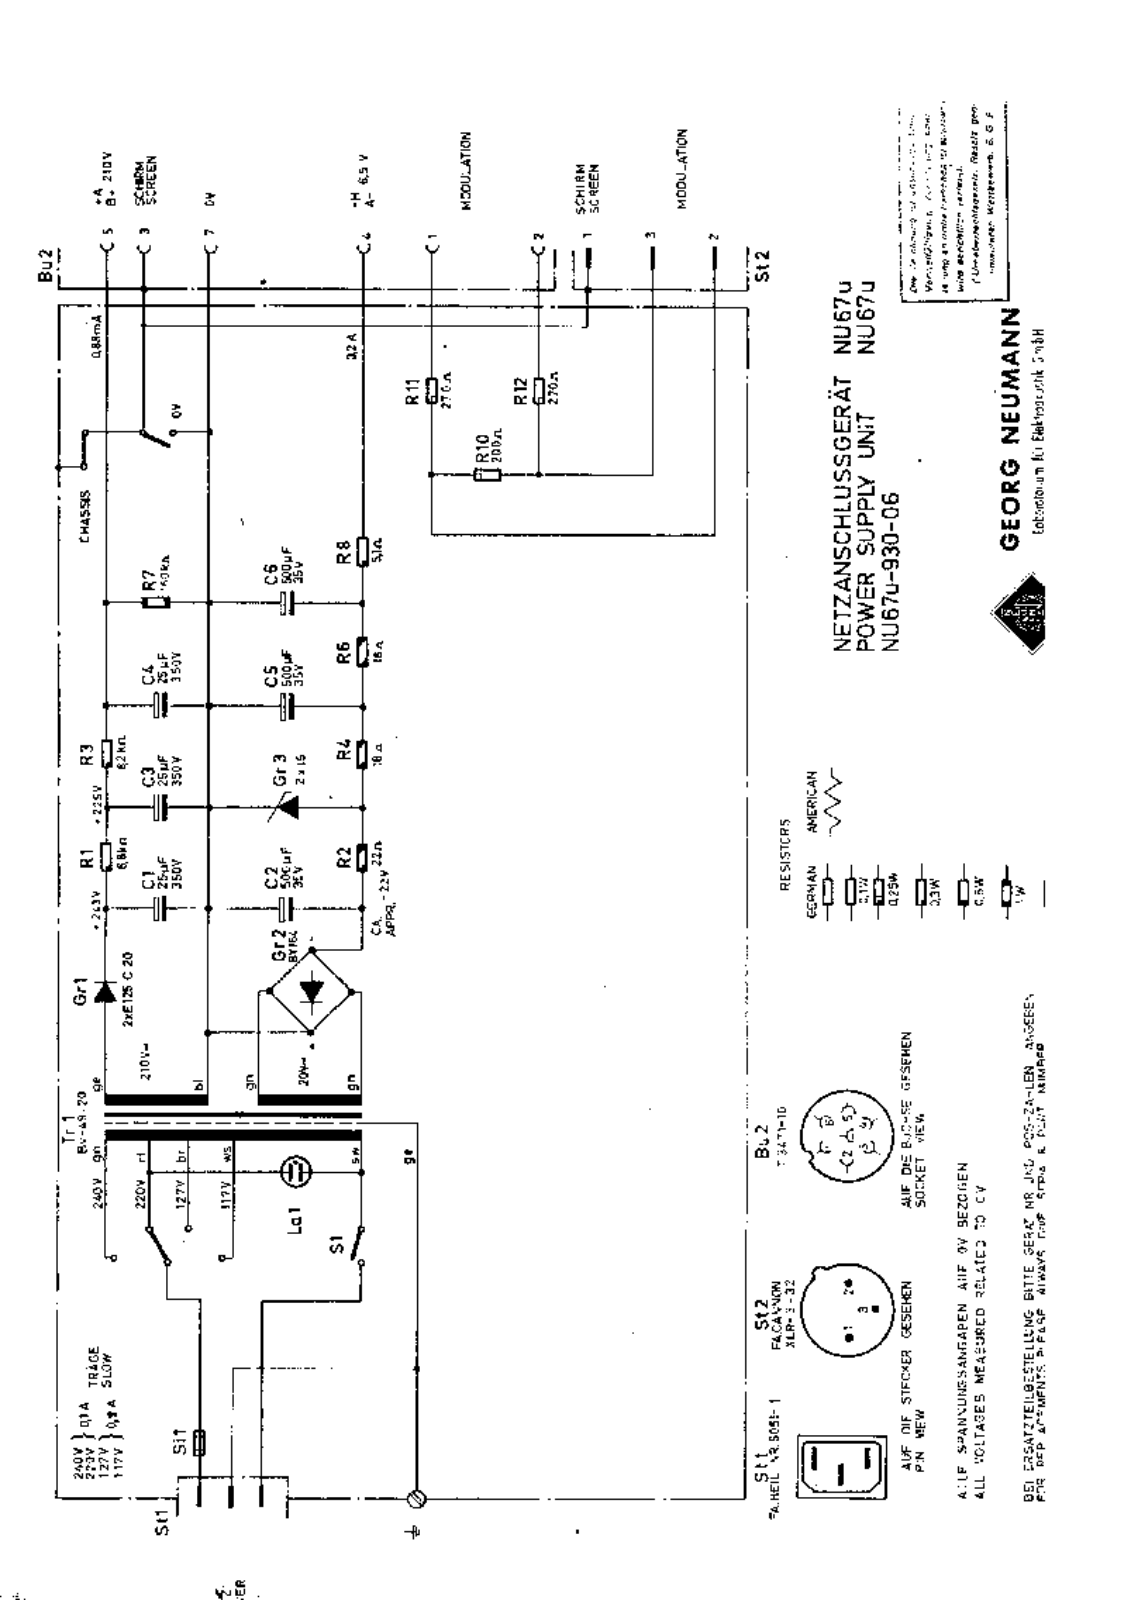 Neumann u67 schematic